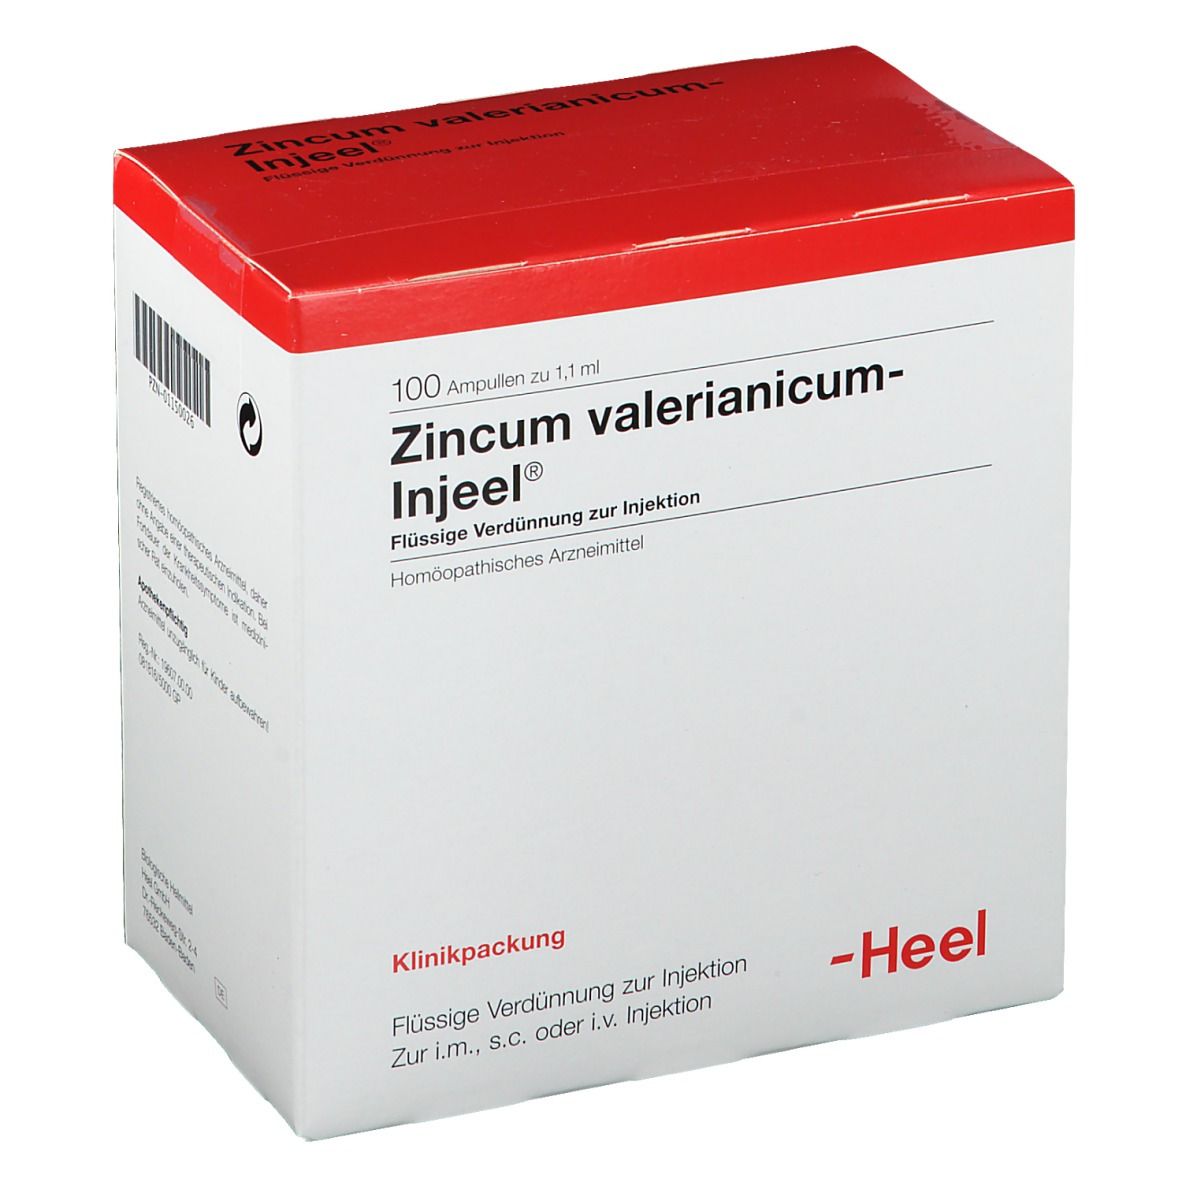 Zincum valerianicum-Injeel® Ampullen